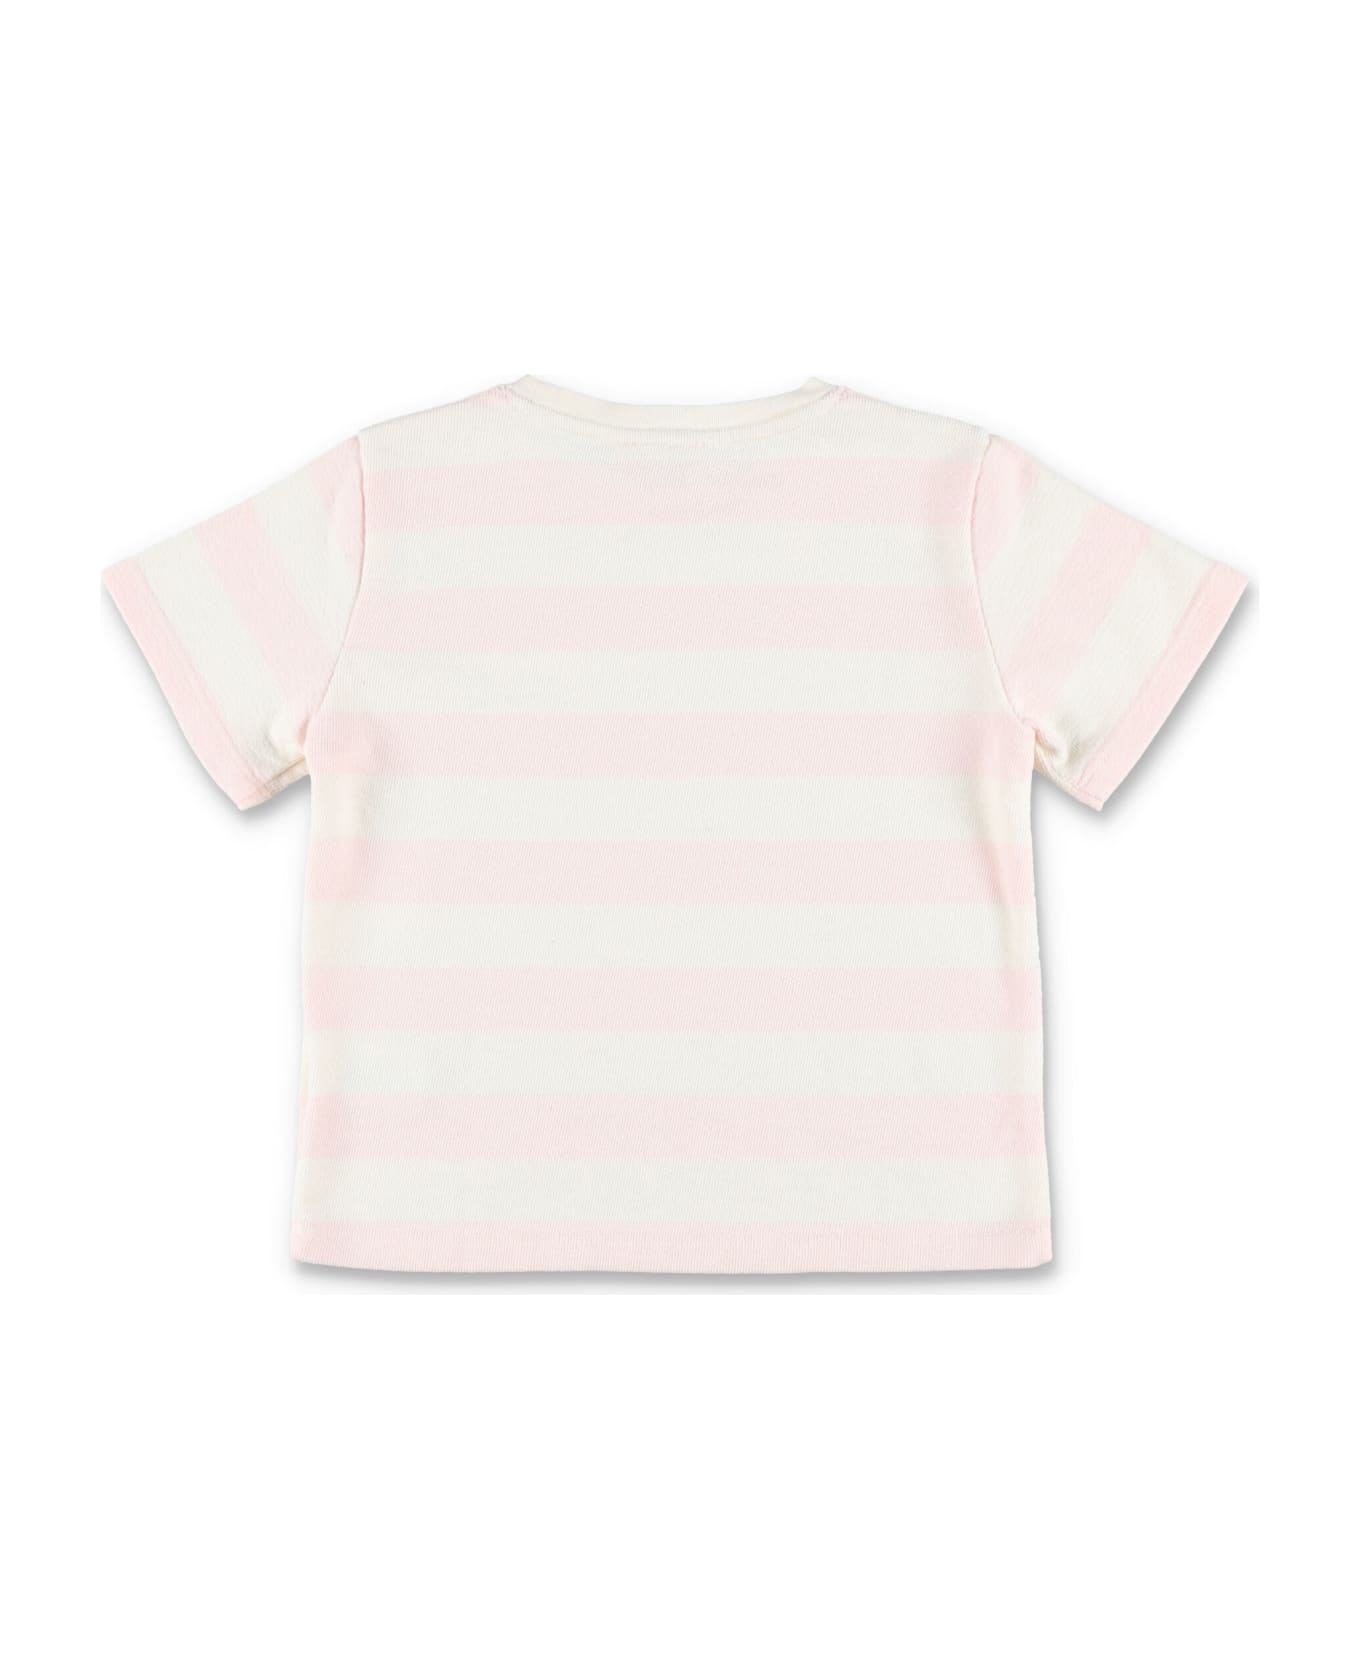 Bonpoint Amitie T-shirt - POWDER PINK